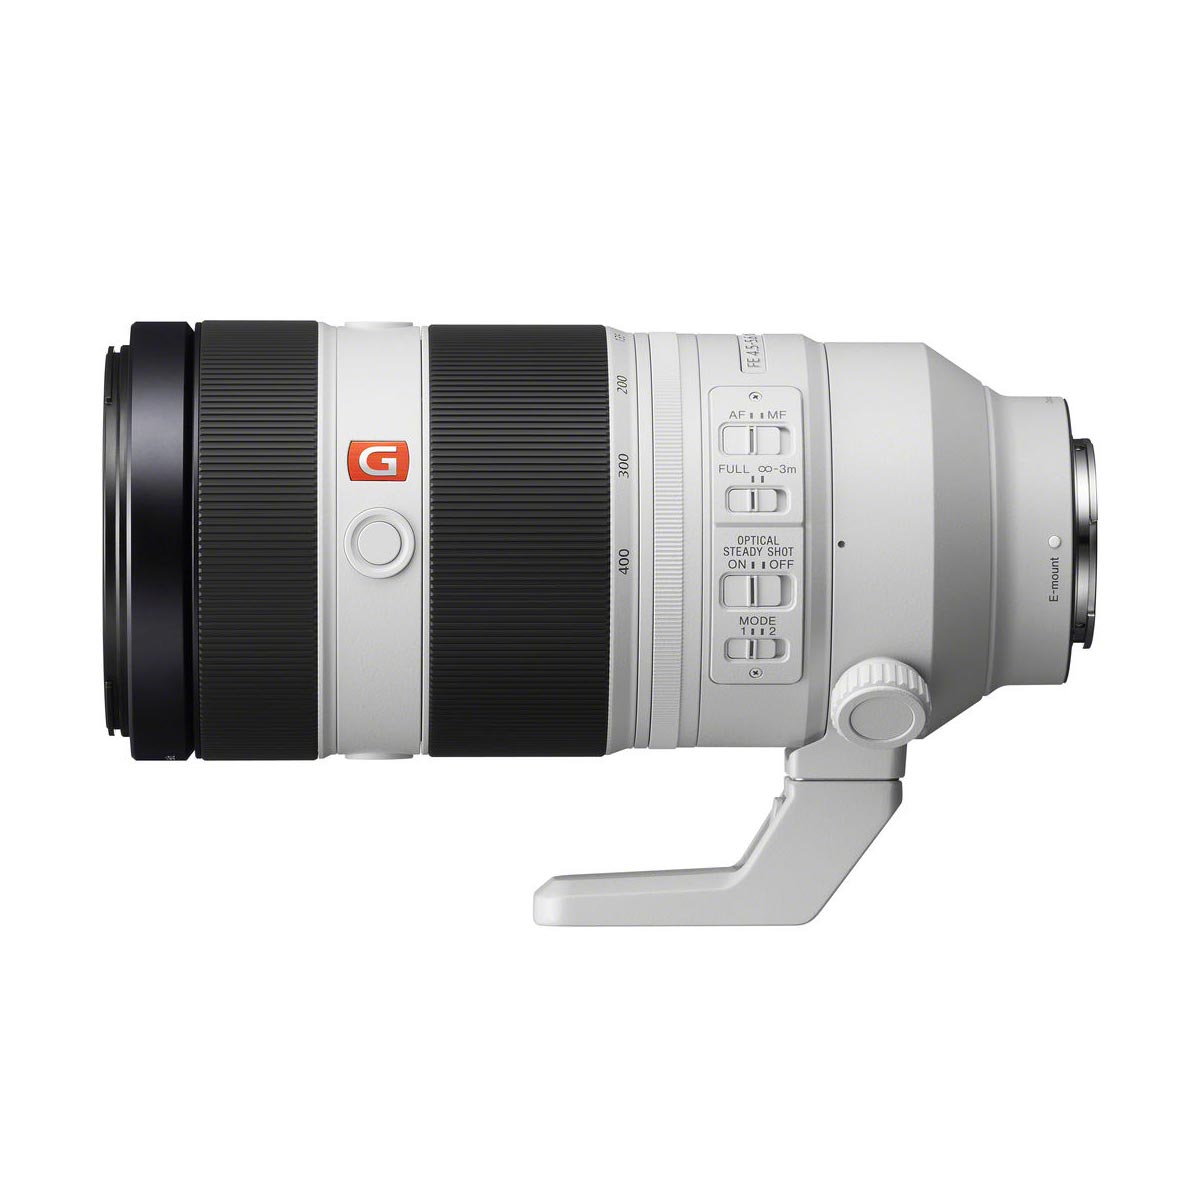 Sony FE 100-400mm f4.5-5.6 GM OSS Lens